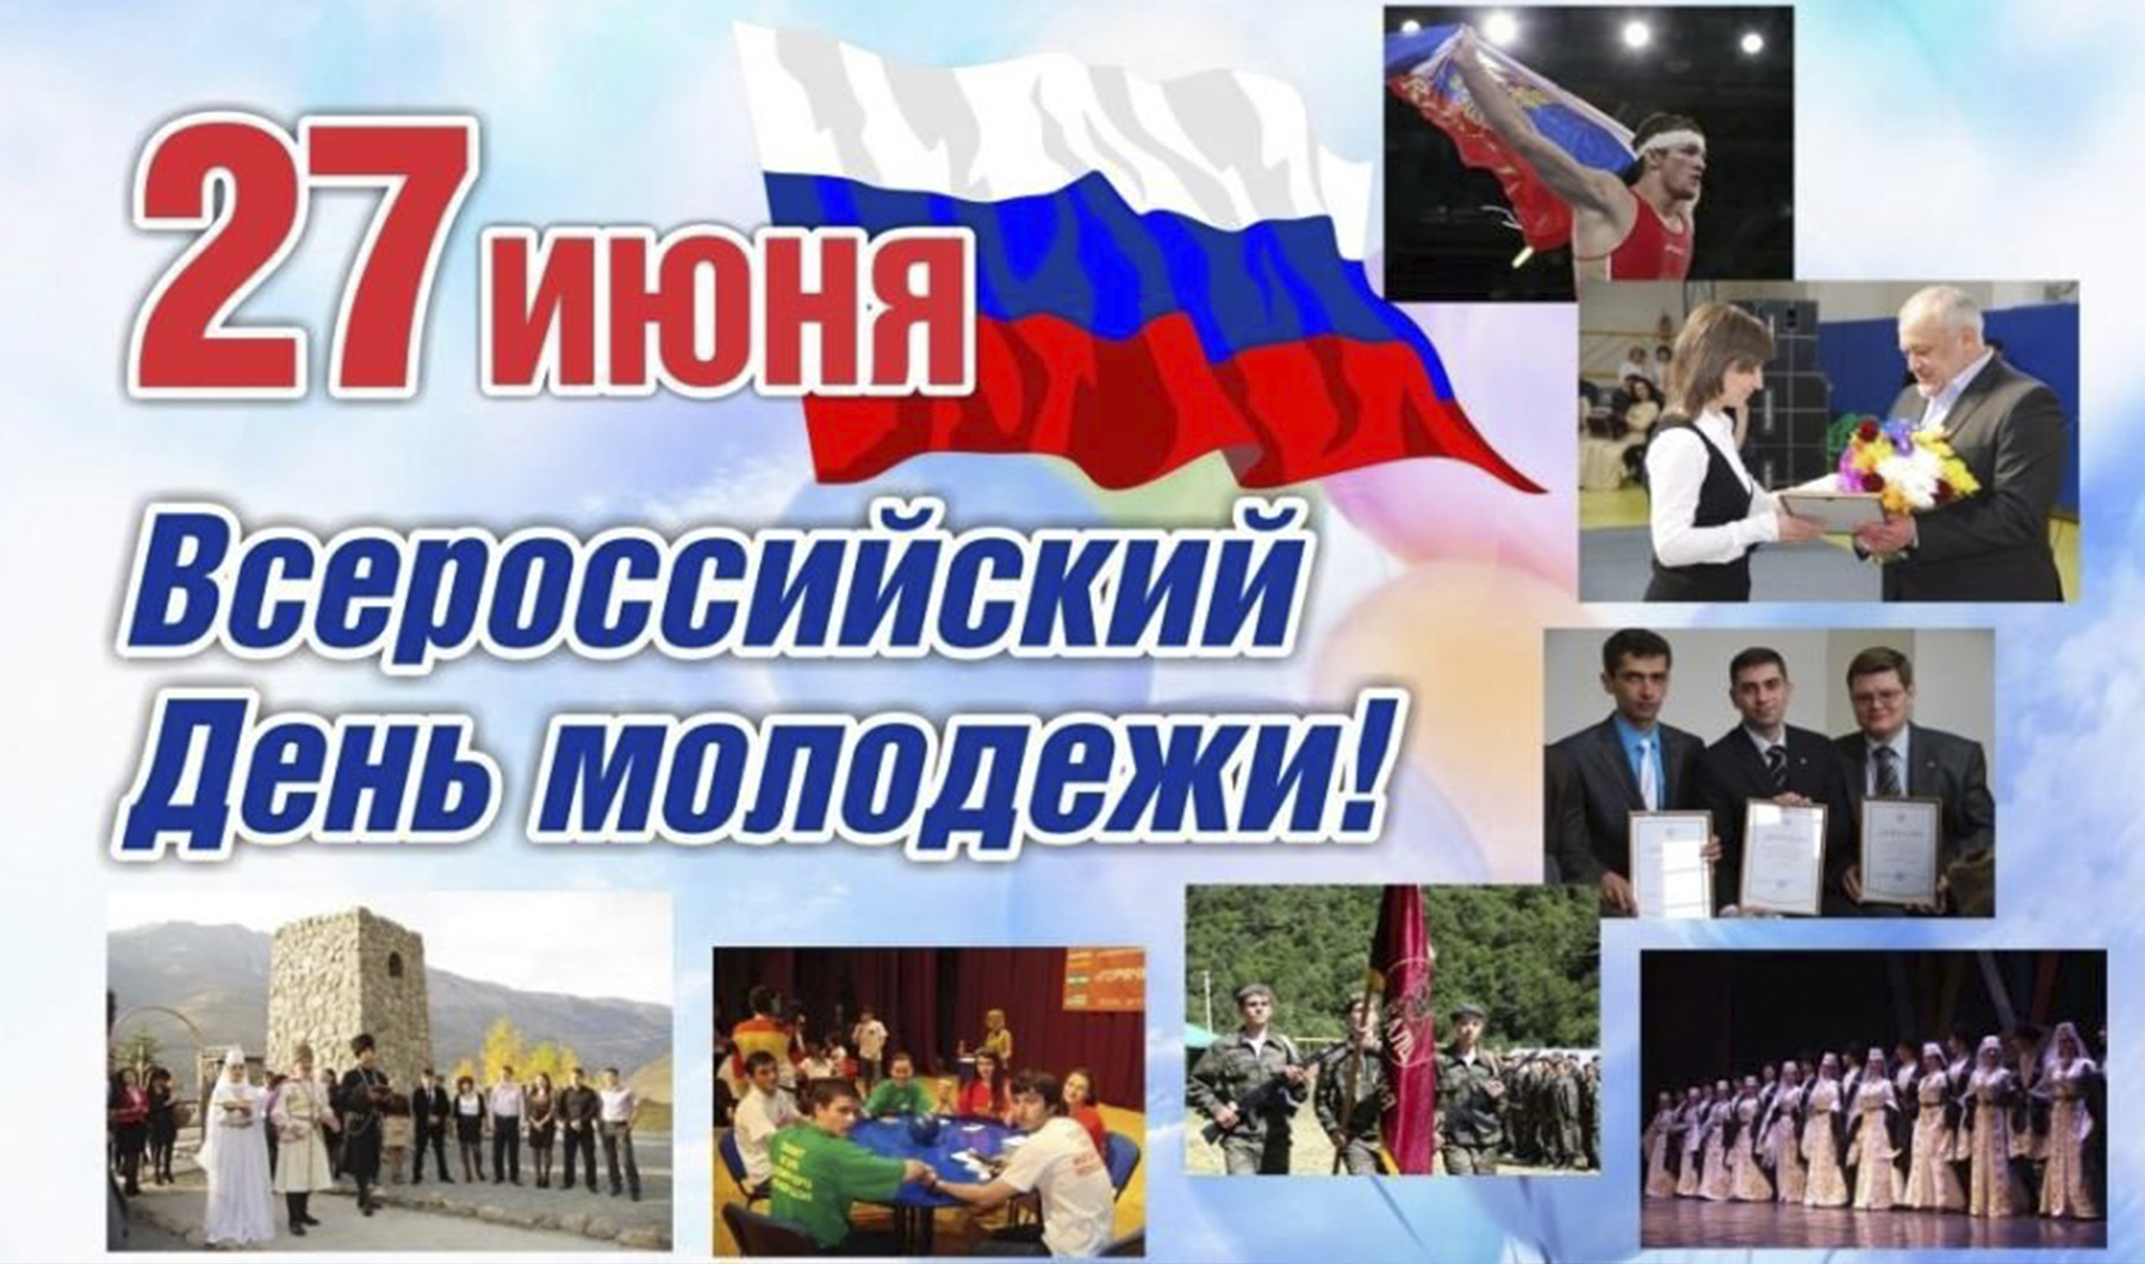 26 27 июня. День молодёжи (Россия). 27 Июня день молодежи России. С днем молодежи. С днём молодёжи картинки.